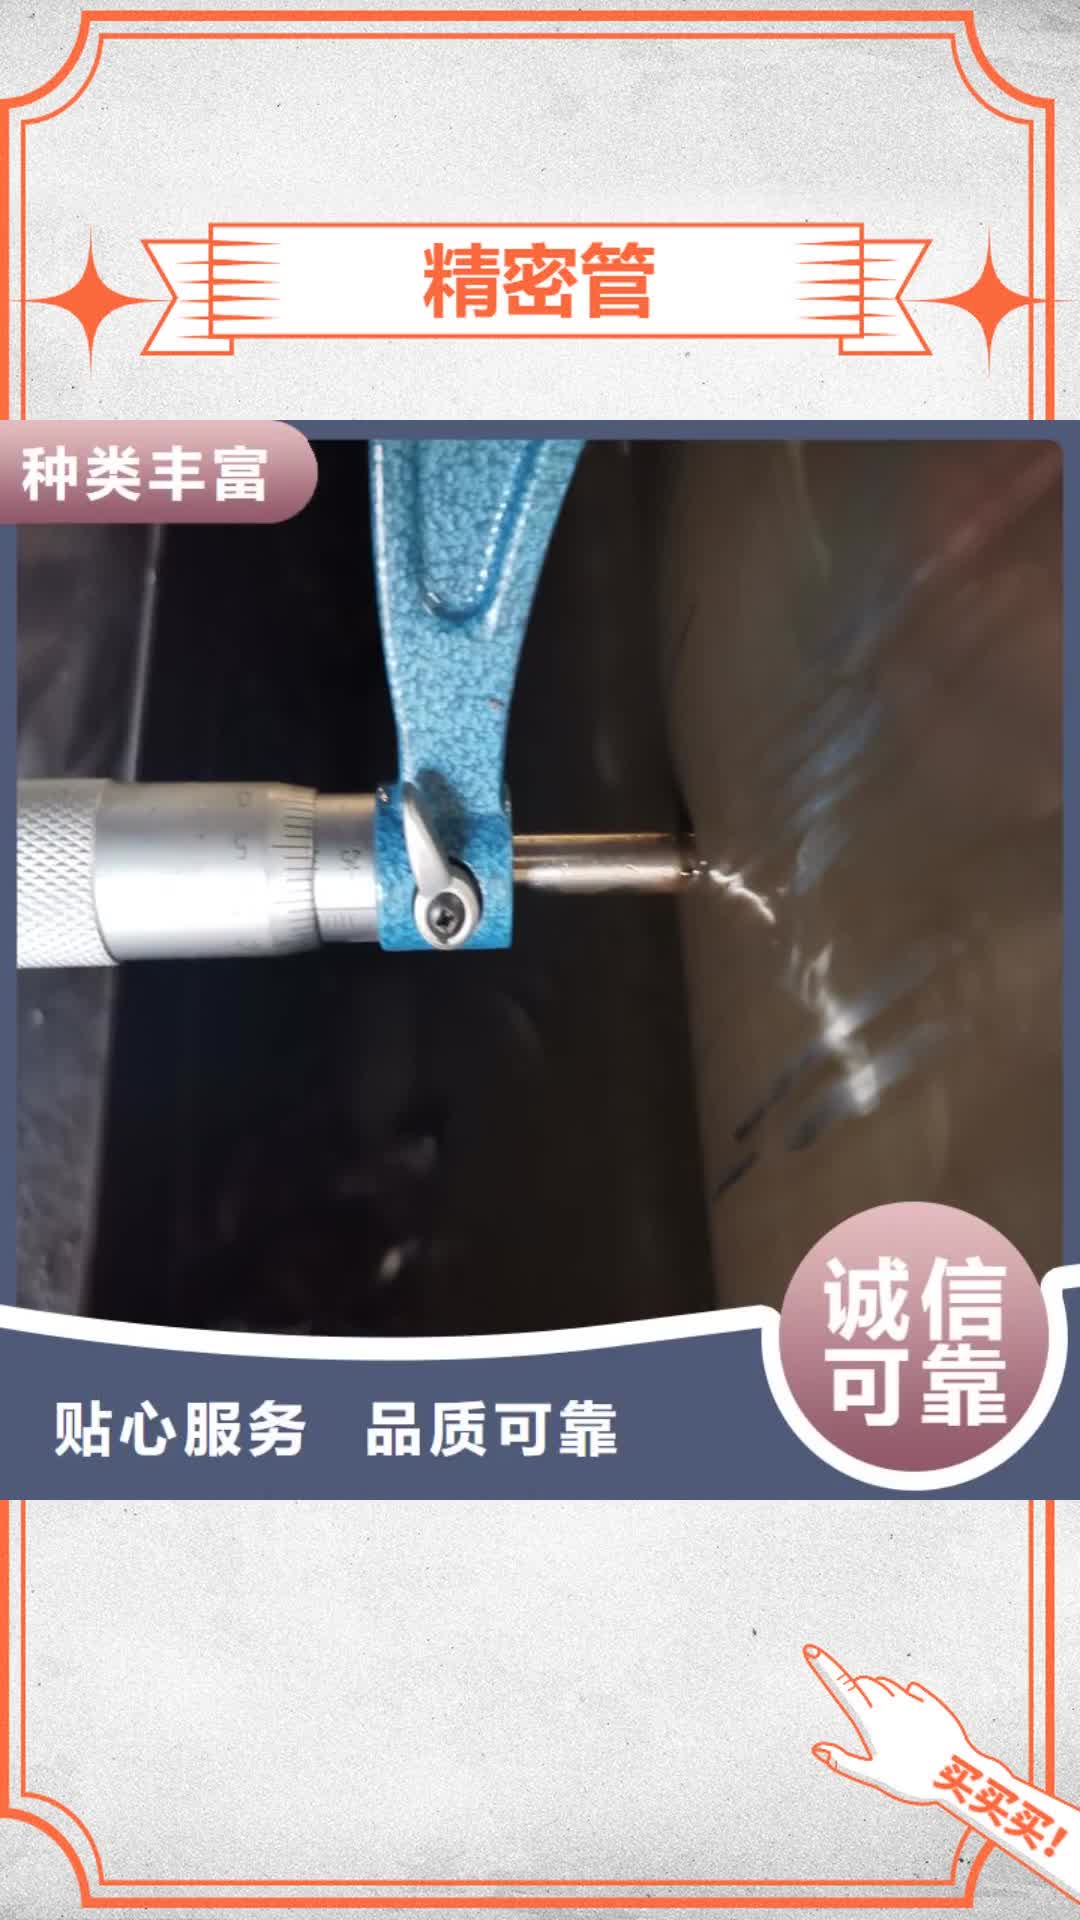 邢台【精密管】,精密钢管专业生产设备